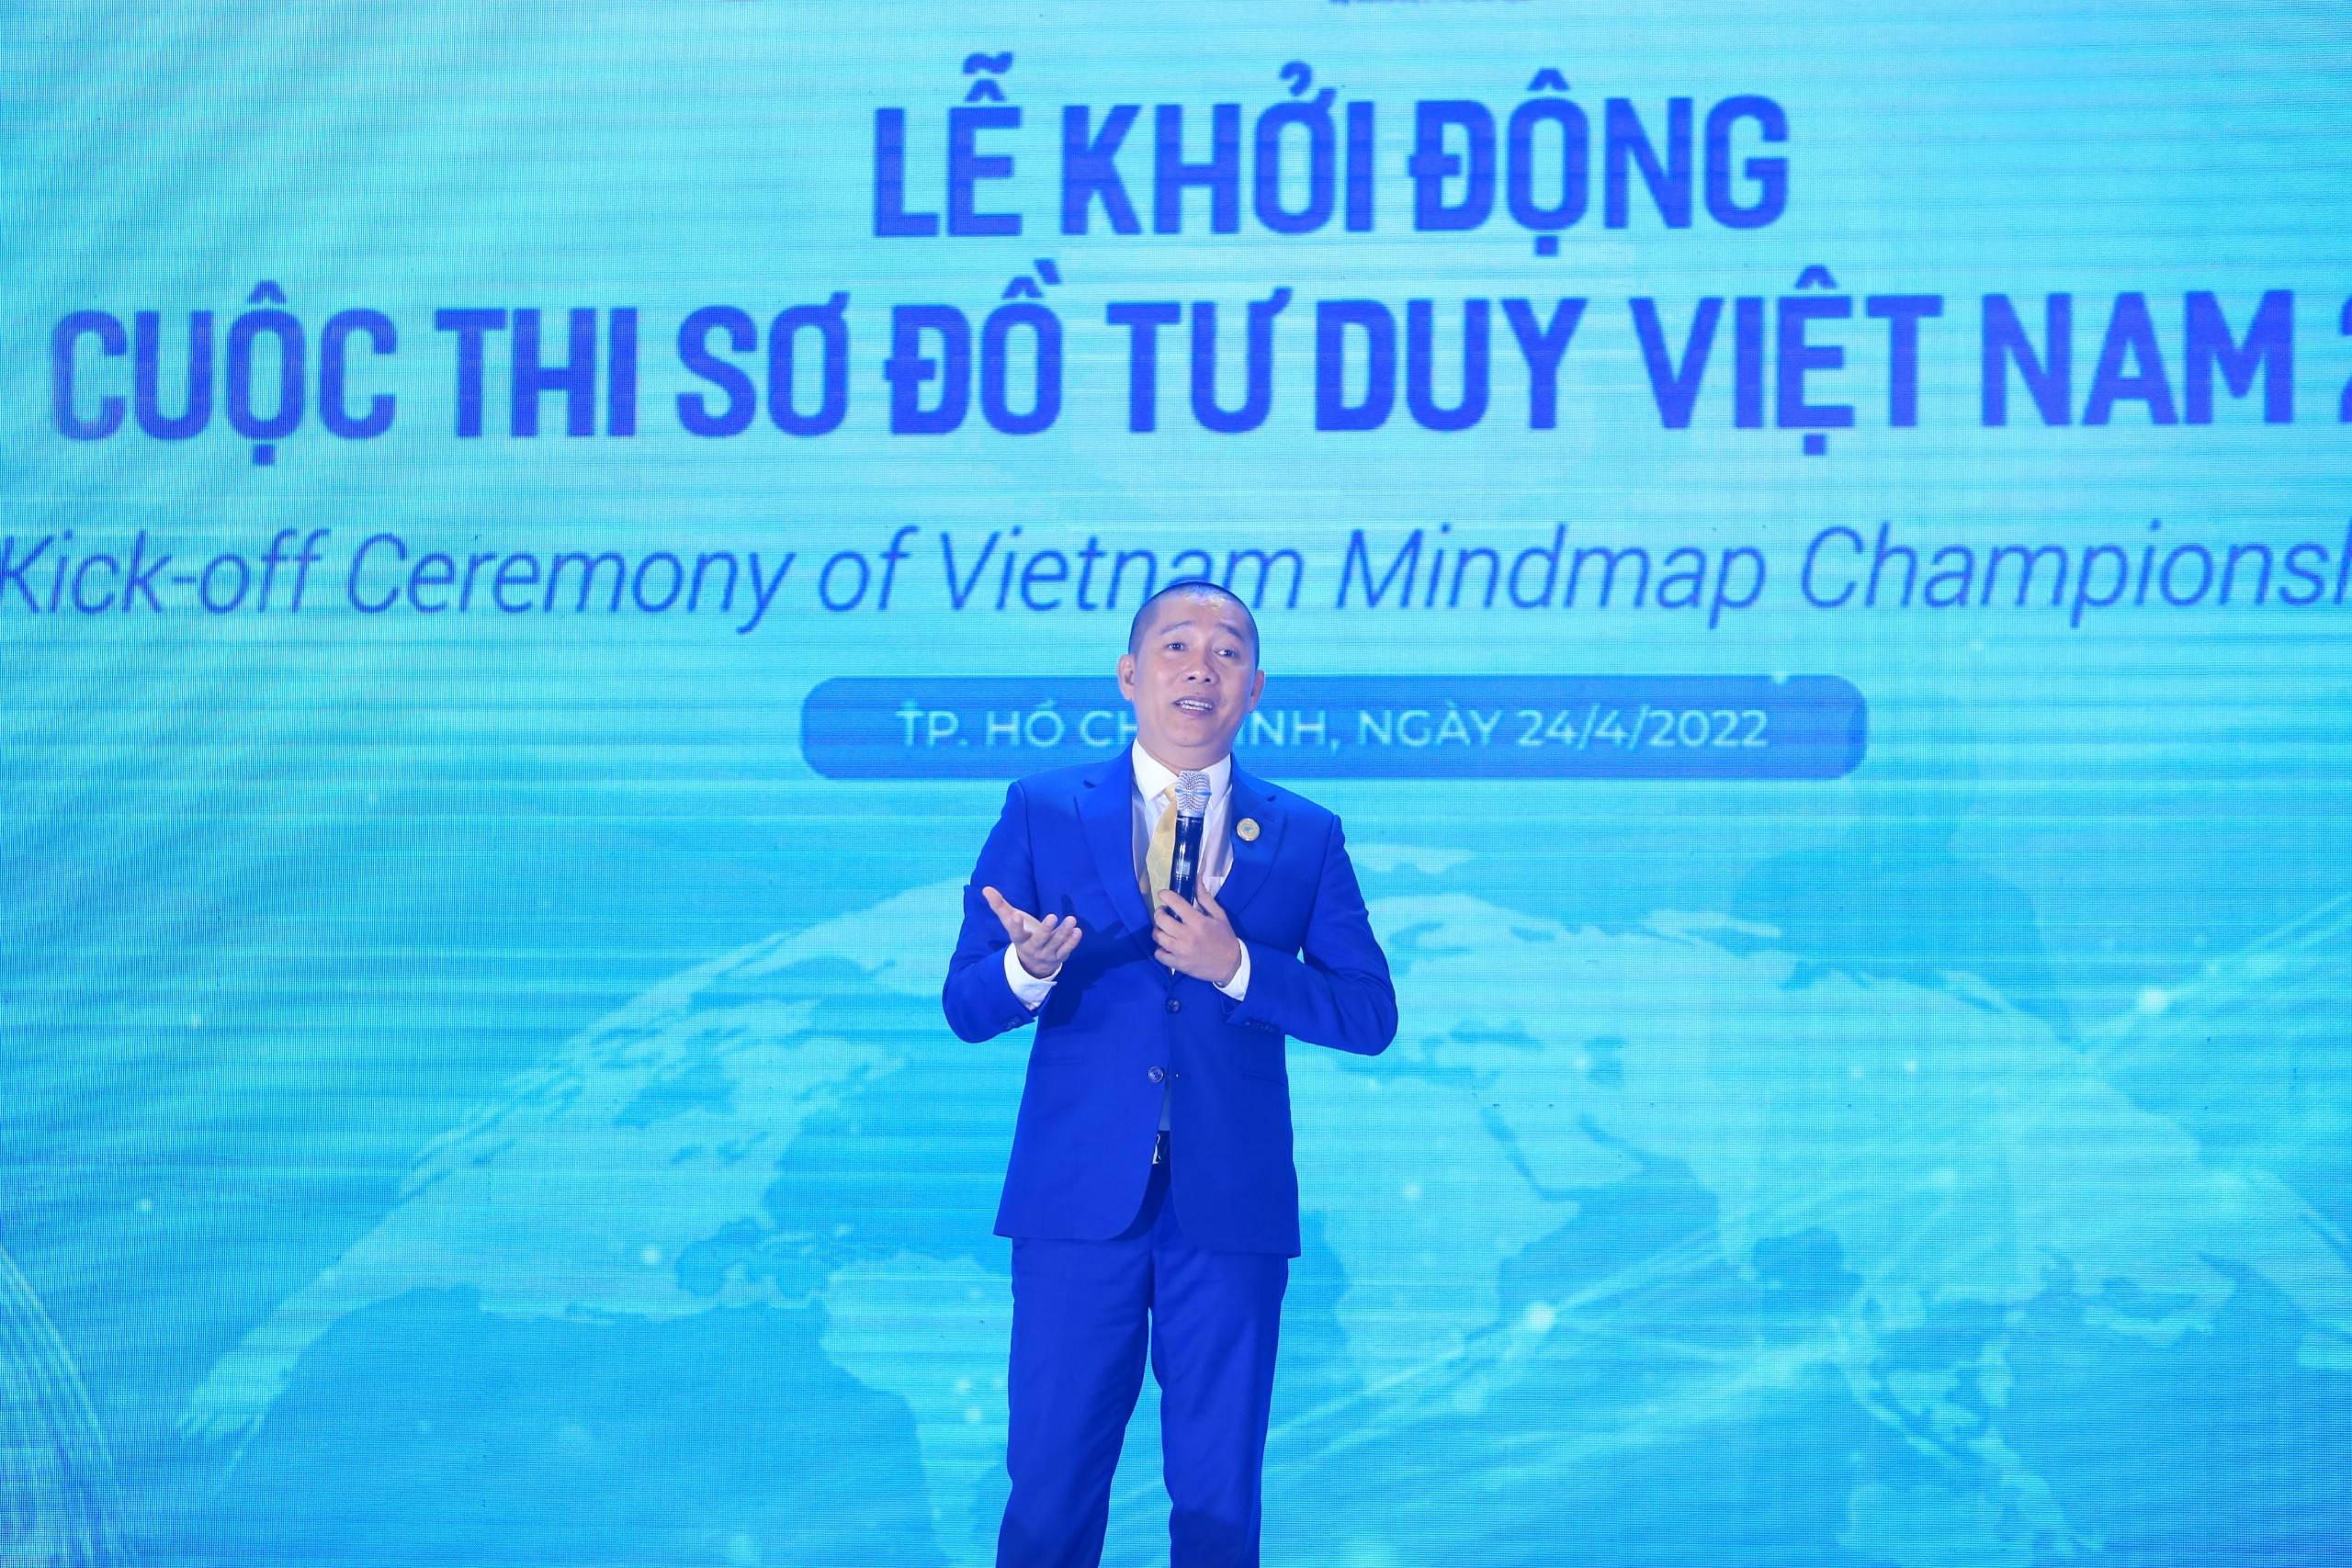 Hãy chiêm ngưỡng sơ đồ tư duy Việt Nam 2022 đầy sáng tạo và đổi mới, đem lại hướng đi thông minh cho sự phát triển của đất nước.